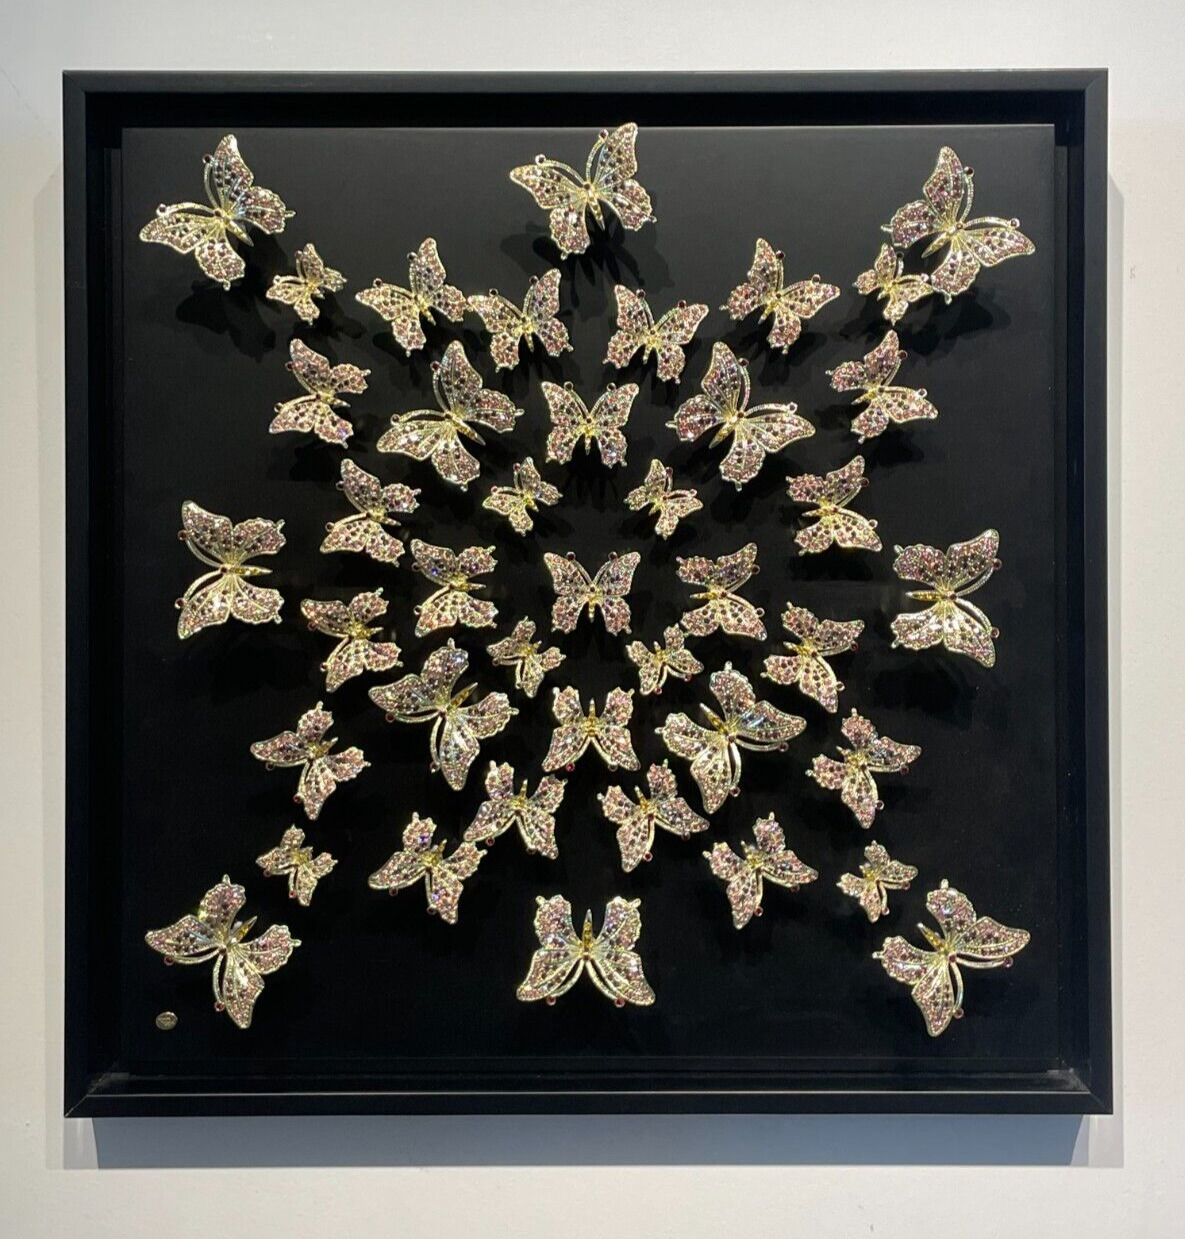 Keren Kopal  Hand made Butterflies Wall Art by &Austrian crystals EDITION 1/1